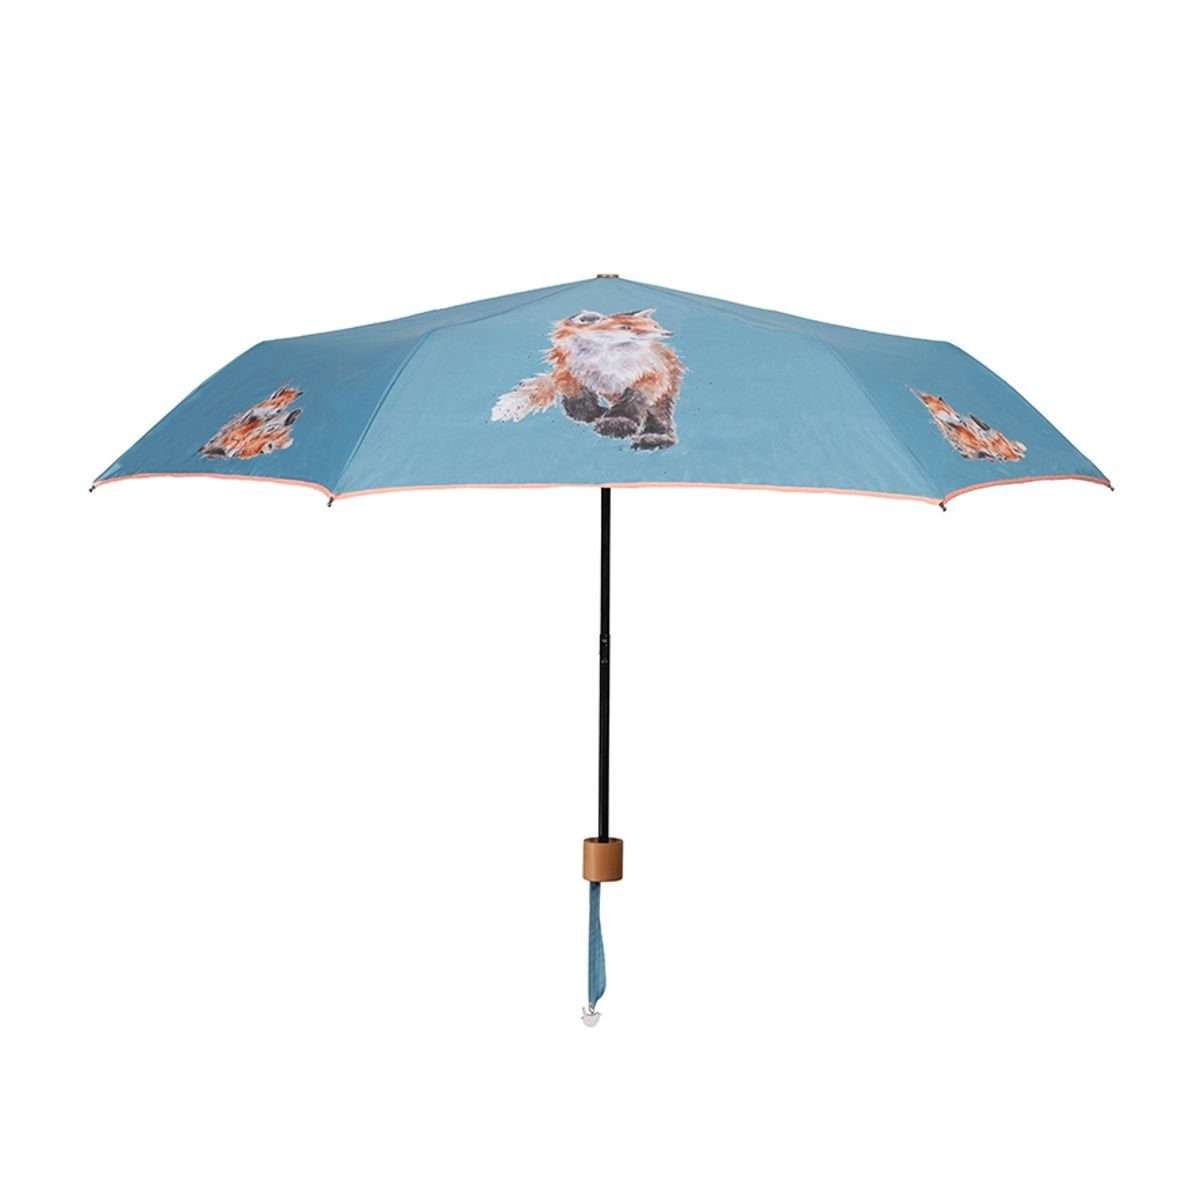 Wrendale Taschenregenschirm Wrendale Designs Taschen-Regenschirm to Born be Fuchs Wild